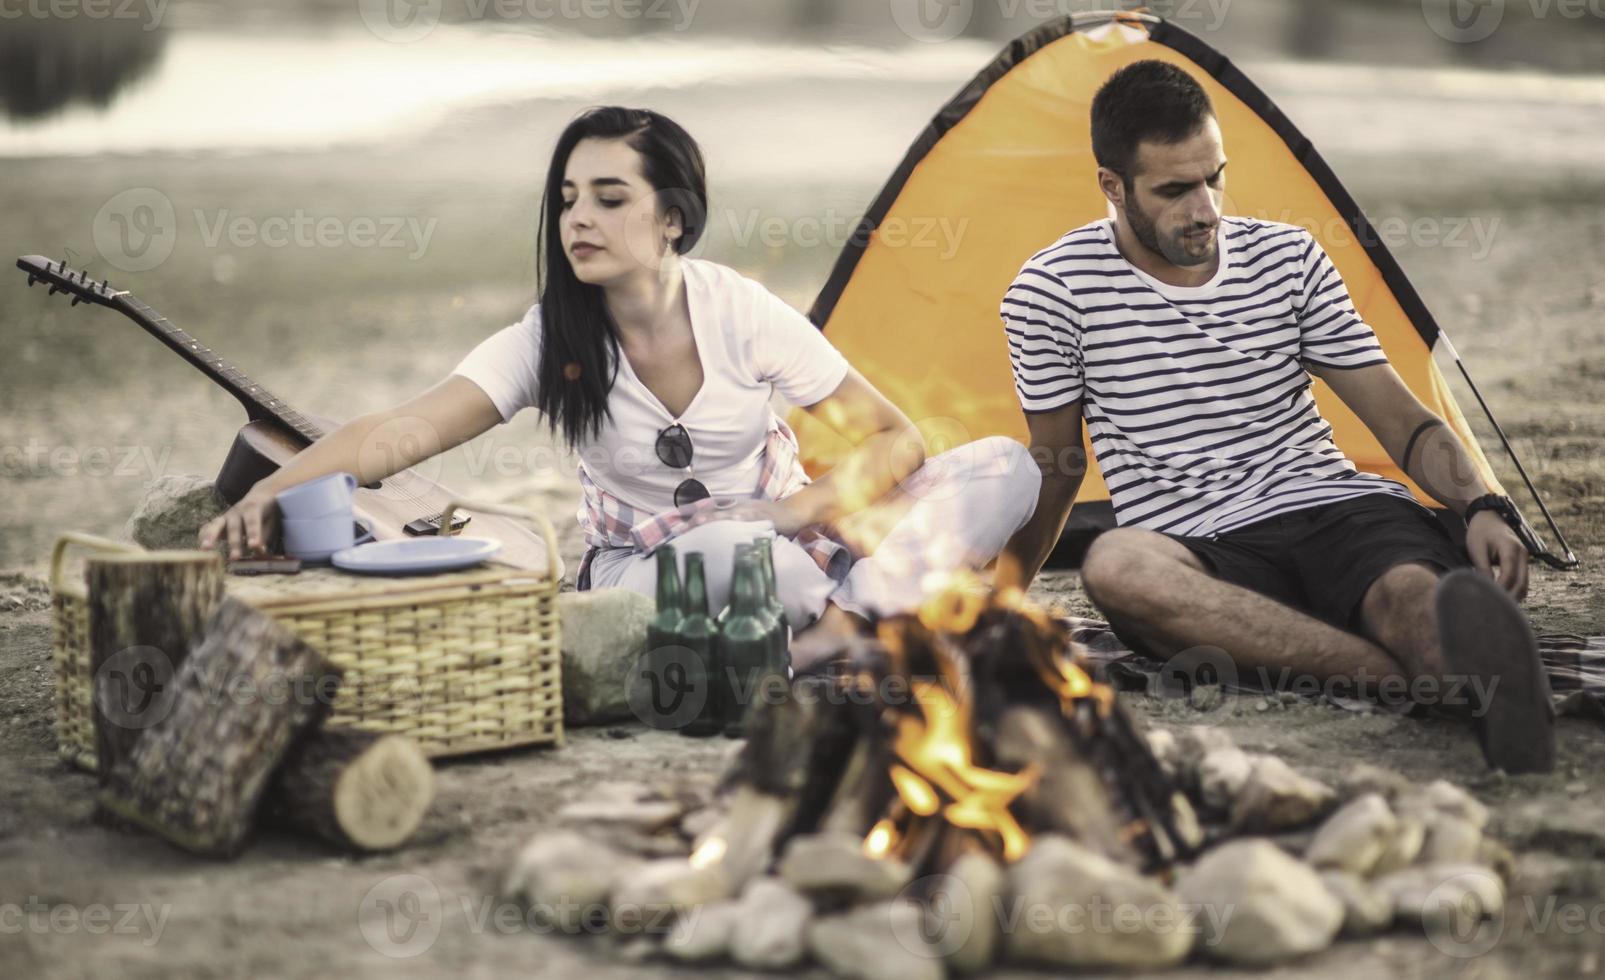 concepto de vacaciones de picnic. hermosa pareja divirtiéndose haciendo barbacoa en la hoguera y relajándose junto a un lago. foto